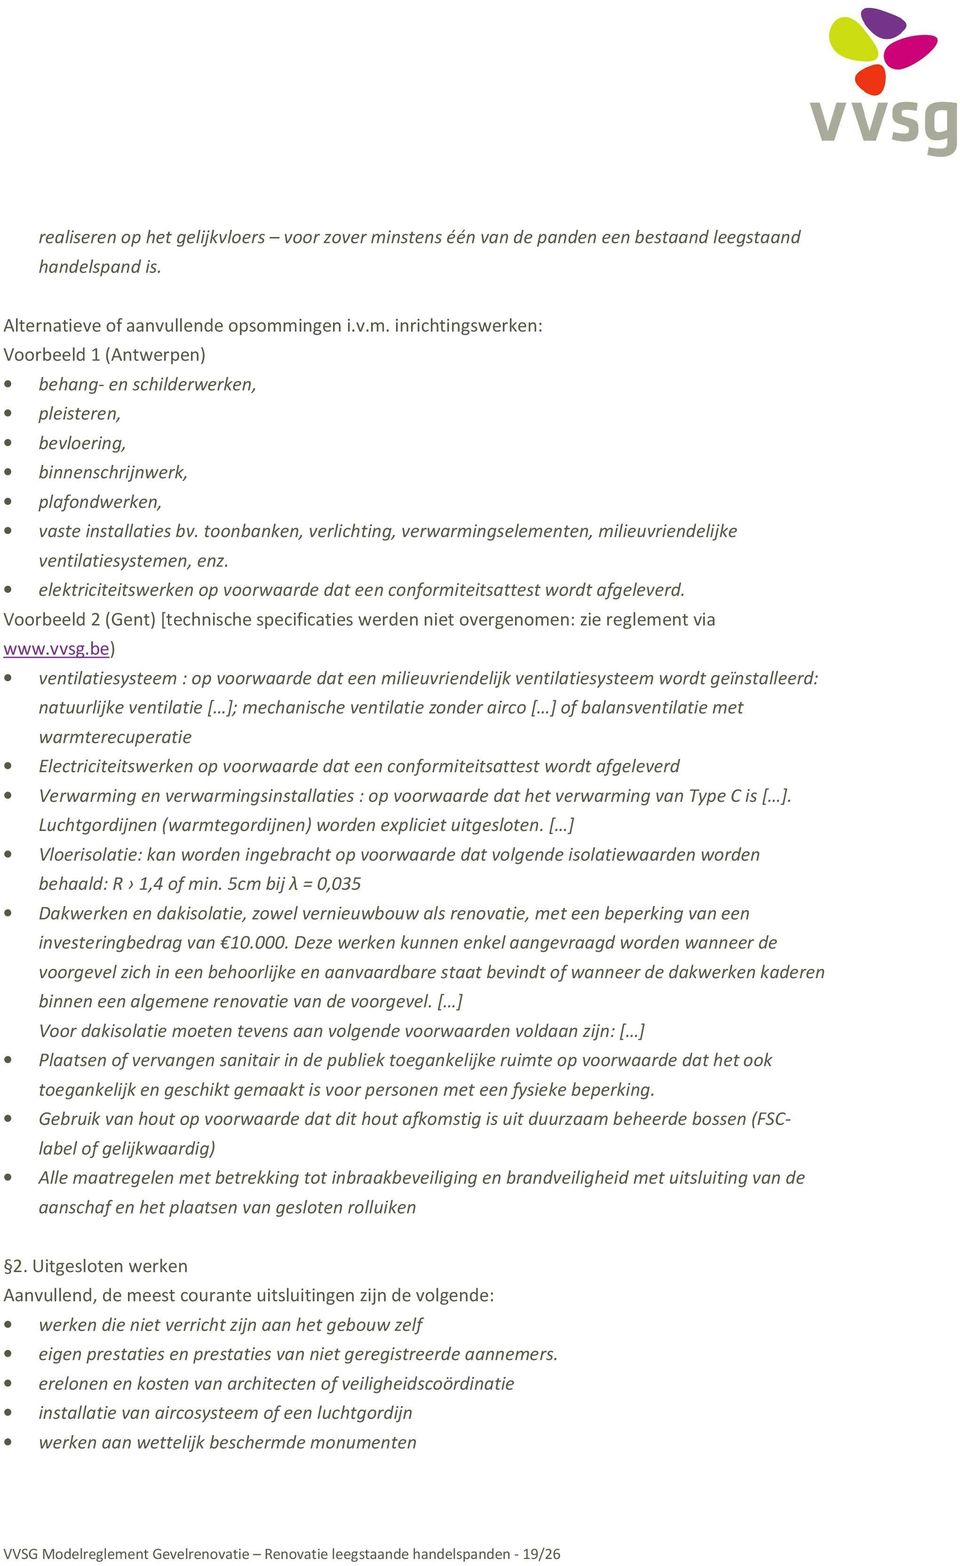 Voorbeeld 2 (Gent)[technische specificaties werden niet overgenomen: zie reglement via www.vvsg.